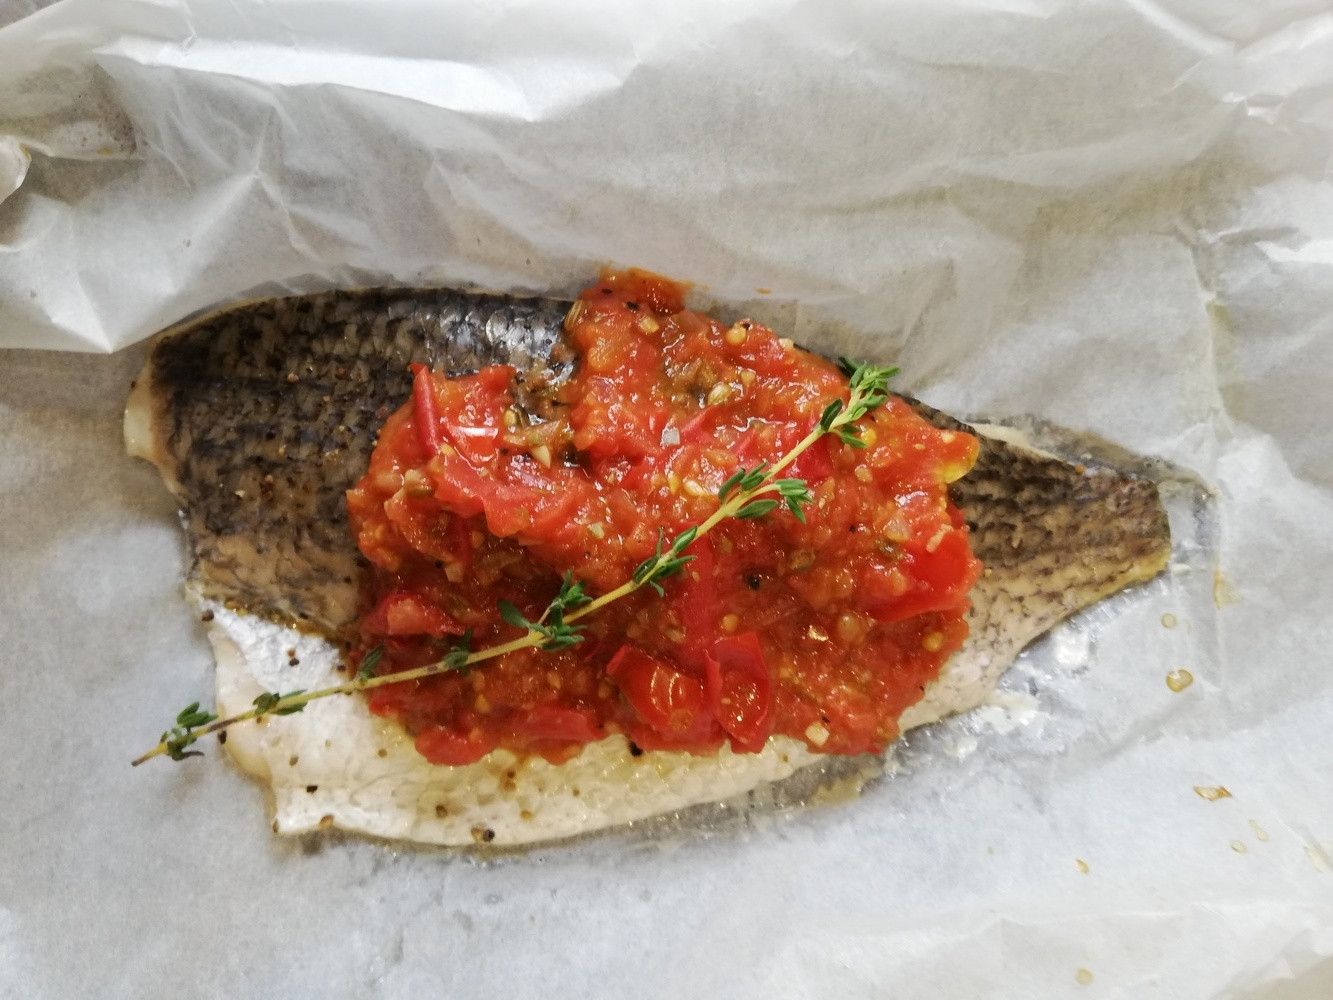 低醣料理 <海鮮> 地中海紙包魚